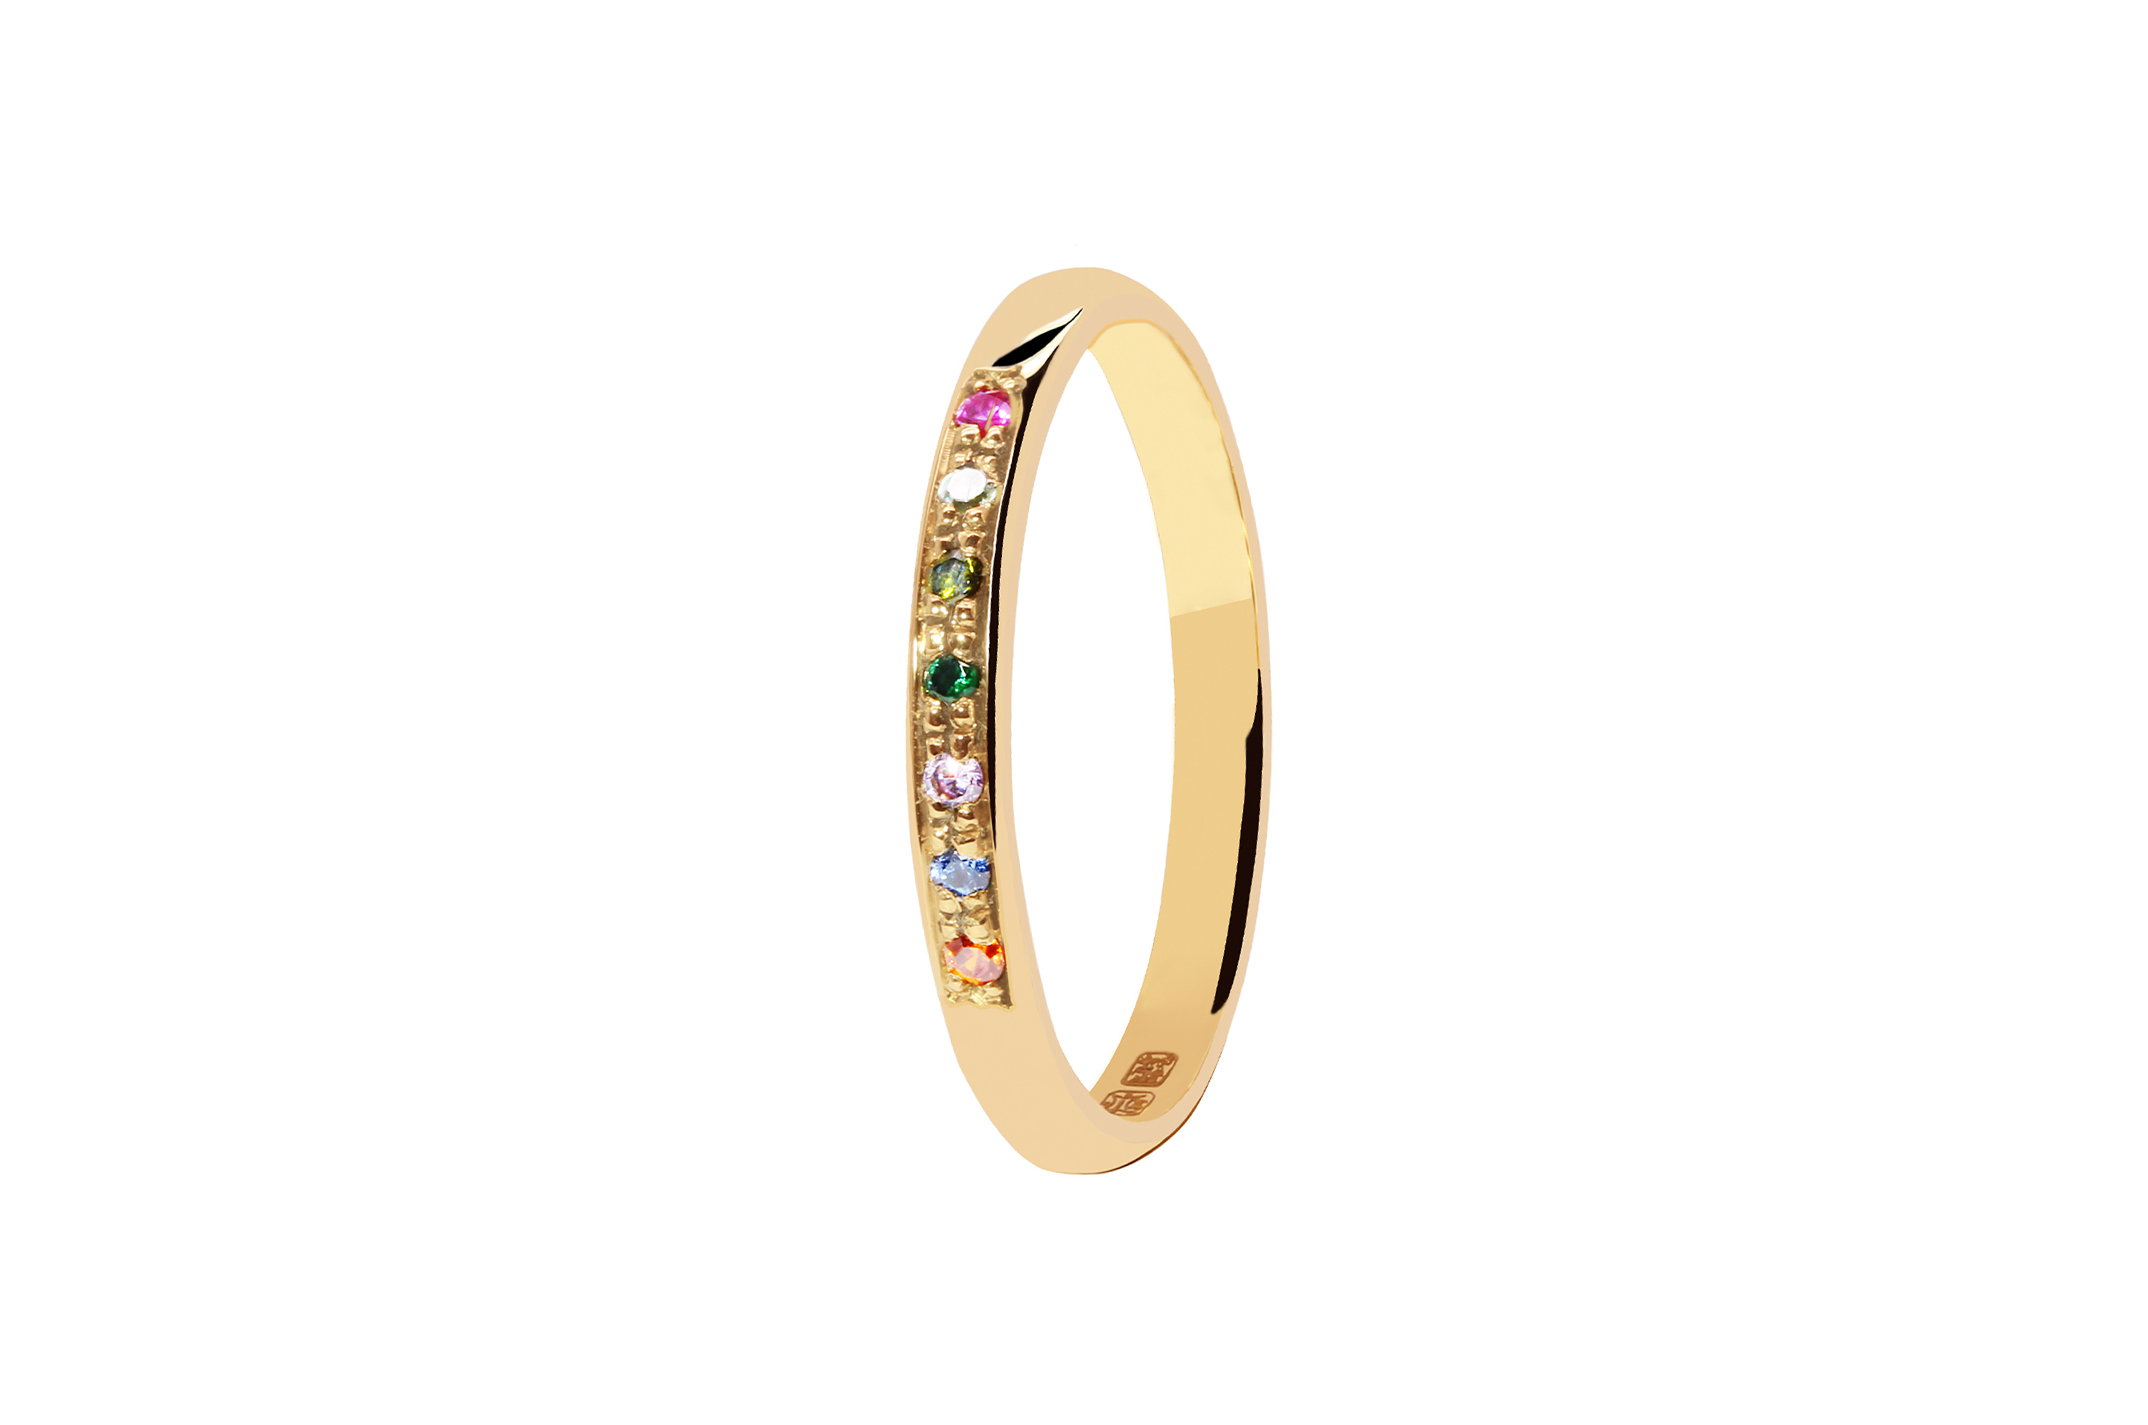 Joia: anel;Material: ouro 19.25 kt;Peso: 1.60 gr;Pedras: zircónias;Cor: amarelo;Tamanho: 12;Género: mulher